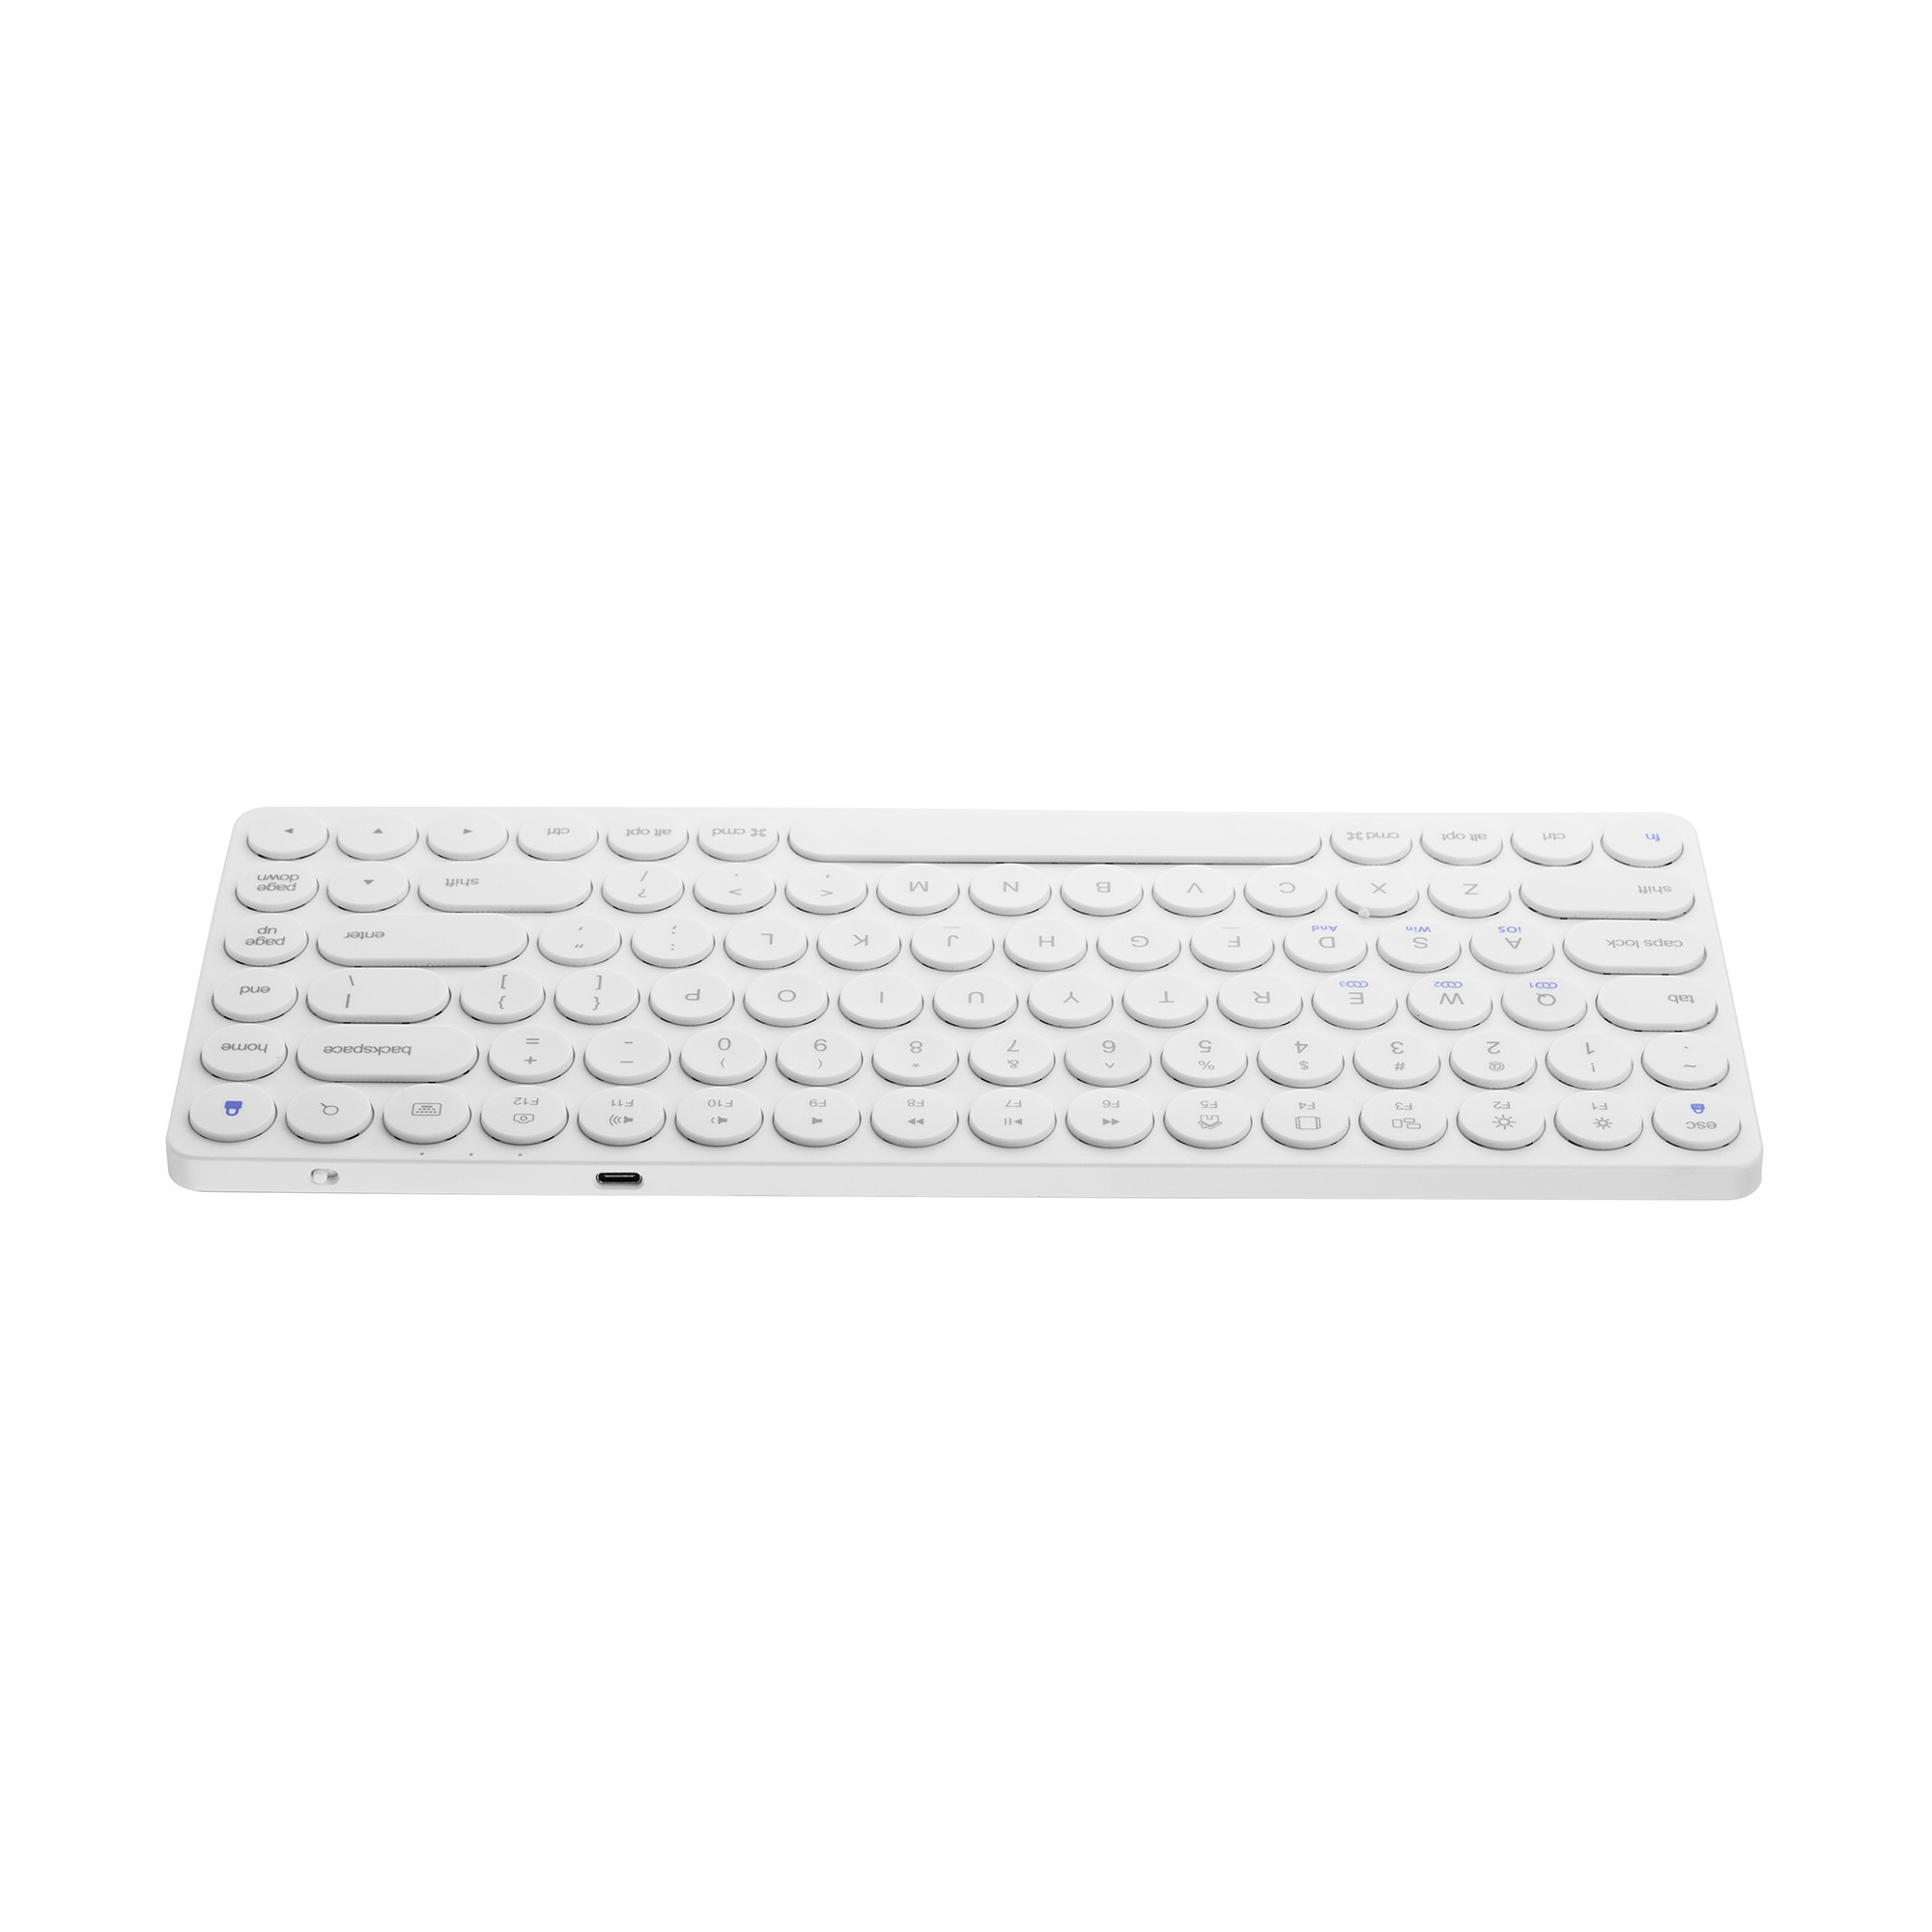 Toetsenbord - Wireless Bluetooth Keyboard 85 toetsen - Wit | Case2go.nl